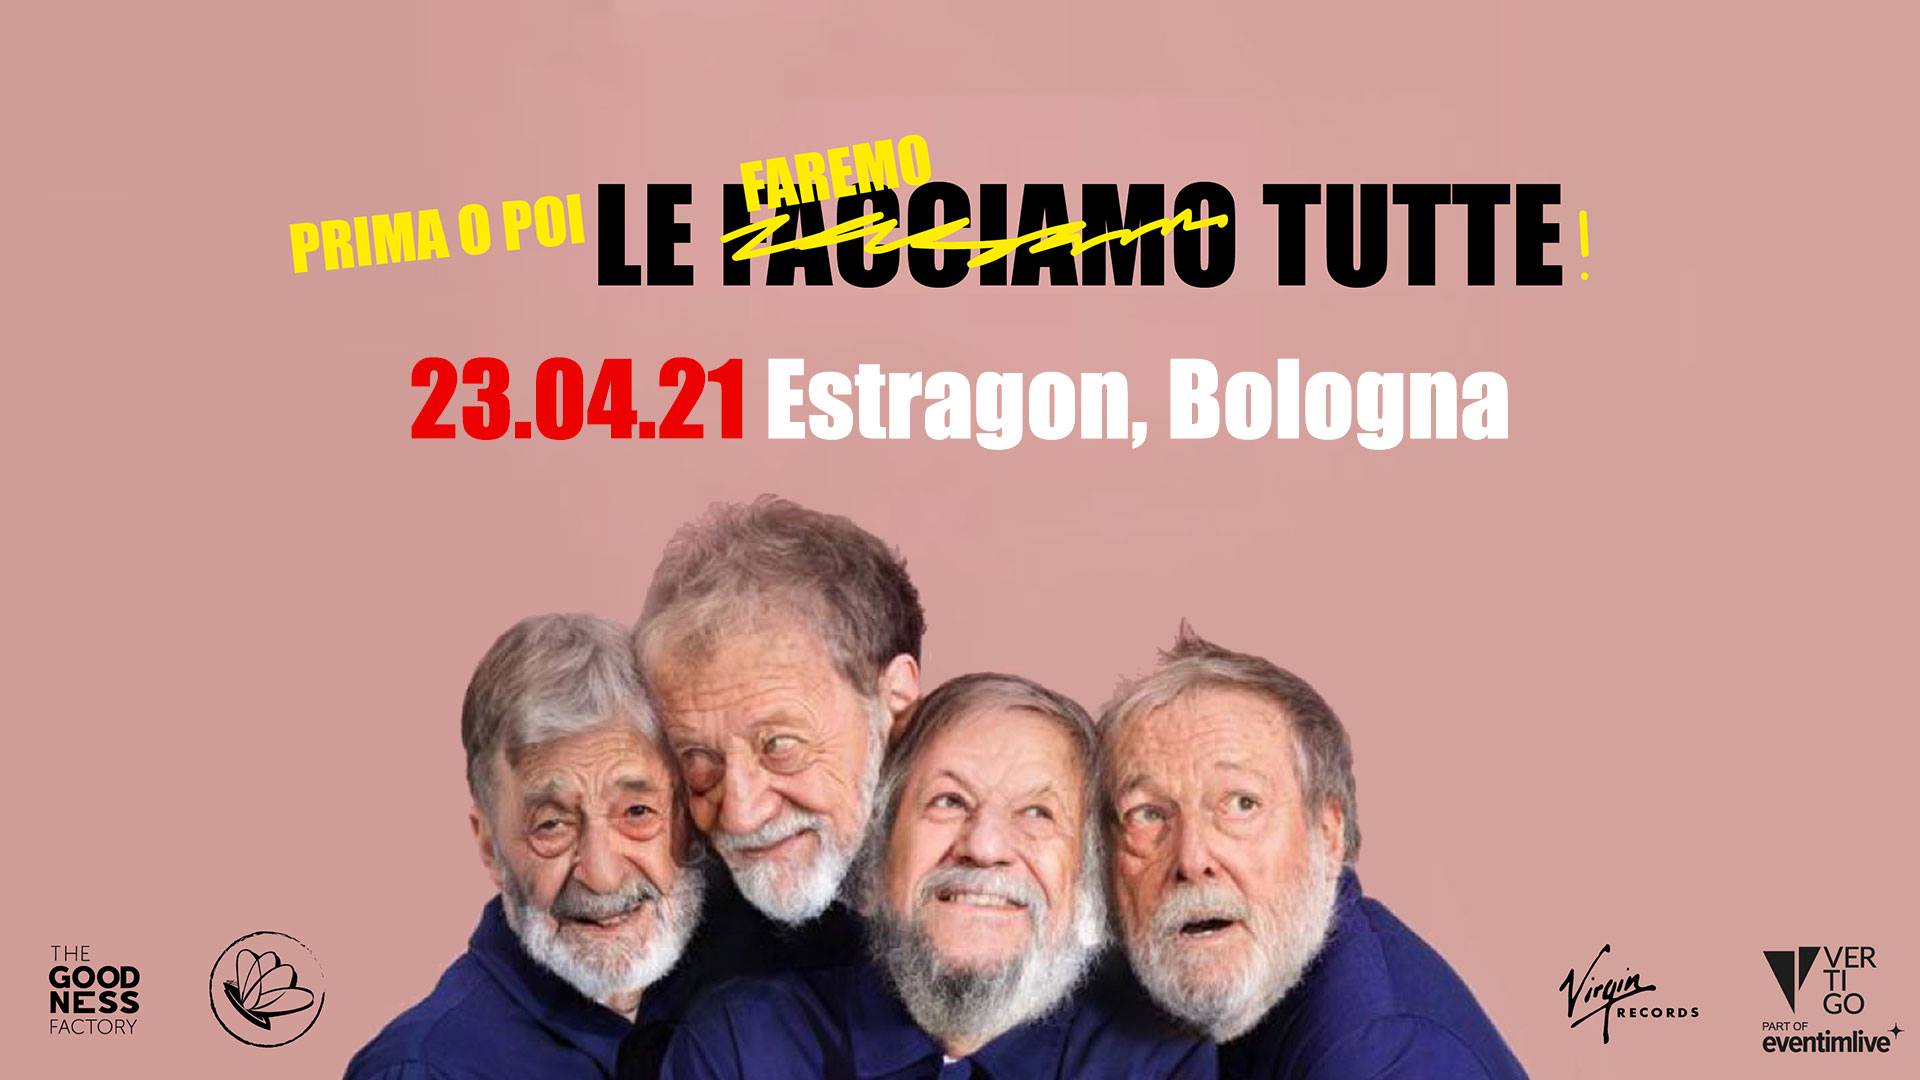 Eugenio In Via Di Gioia, Estragon Club Bologna